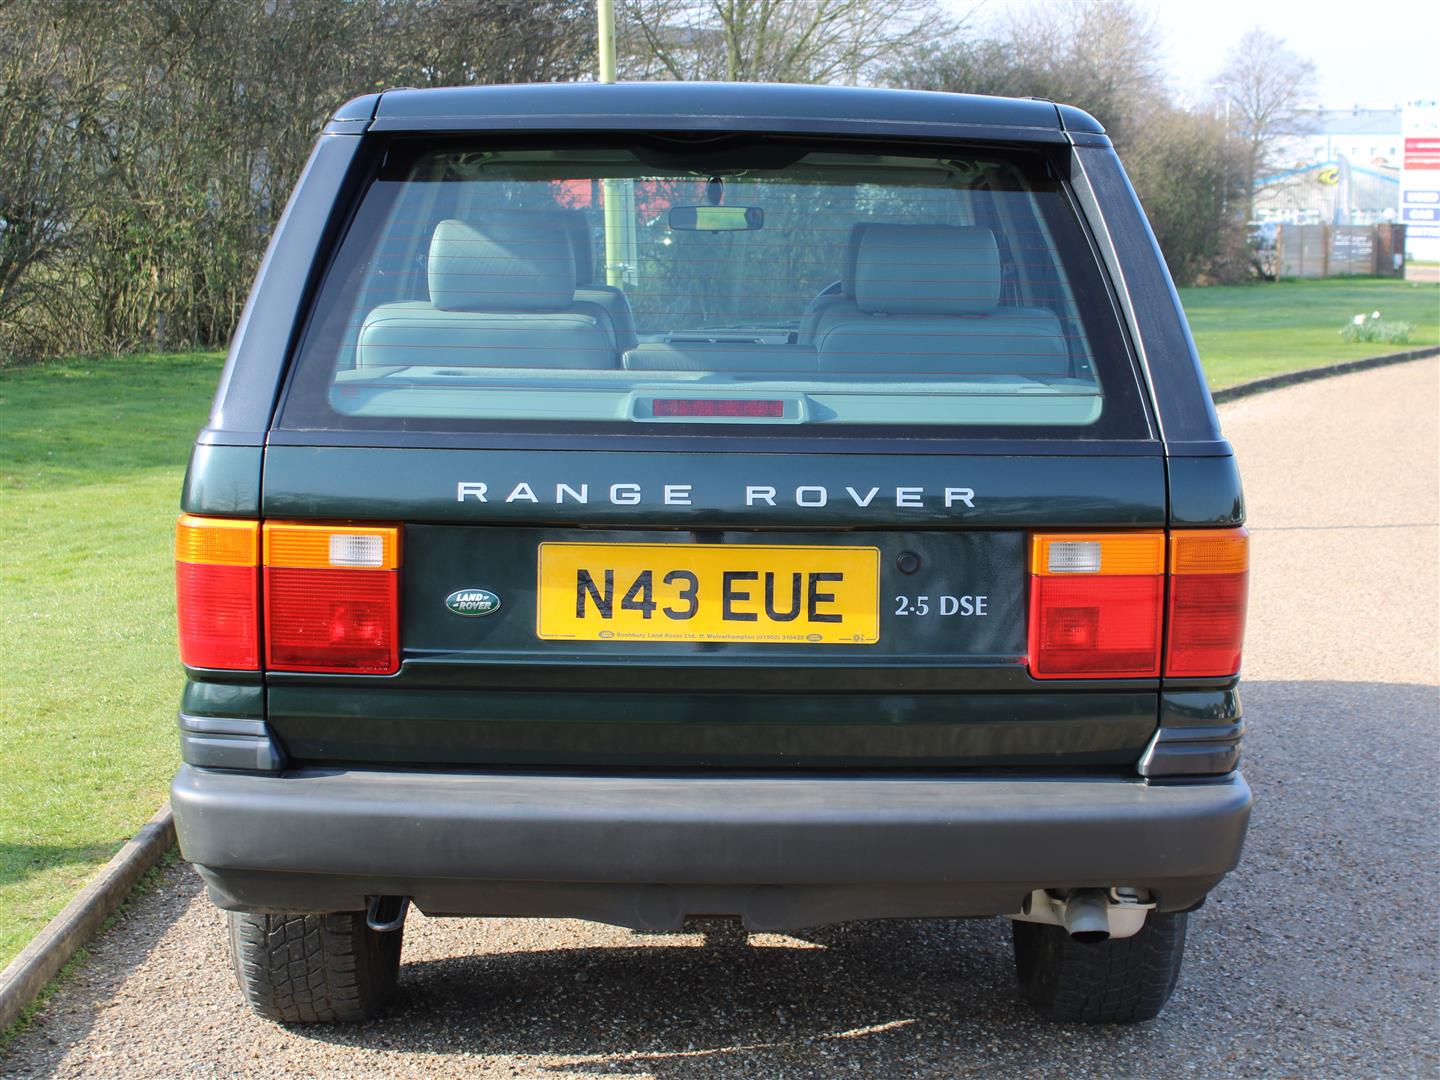 1996 Range Rover 2.5 DSE Auto - Image 4 of 20